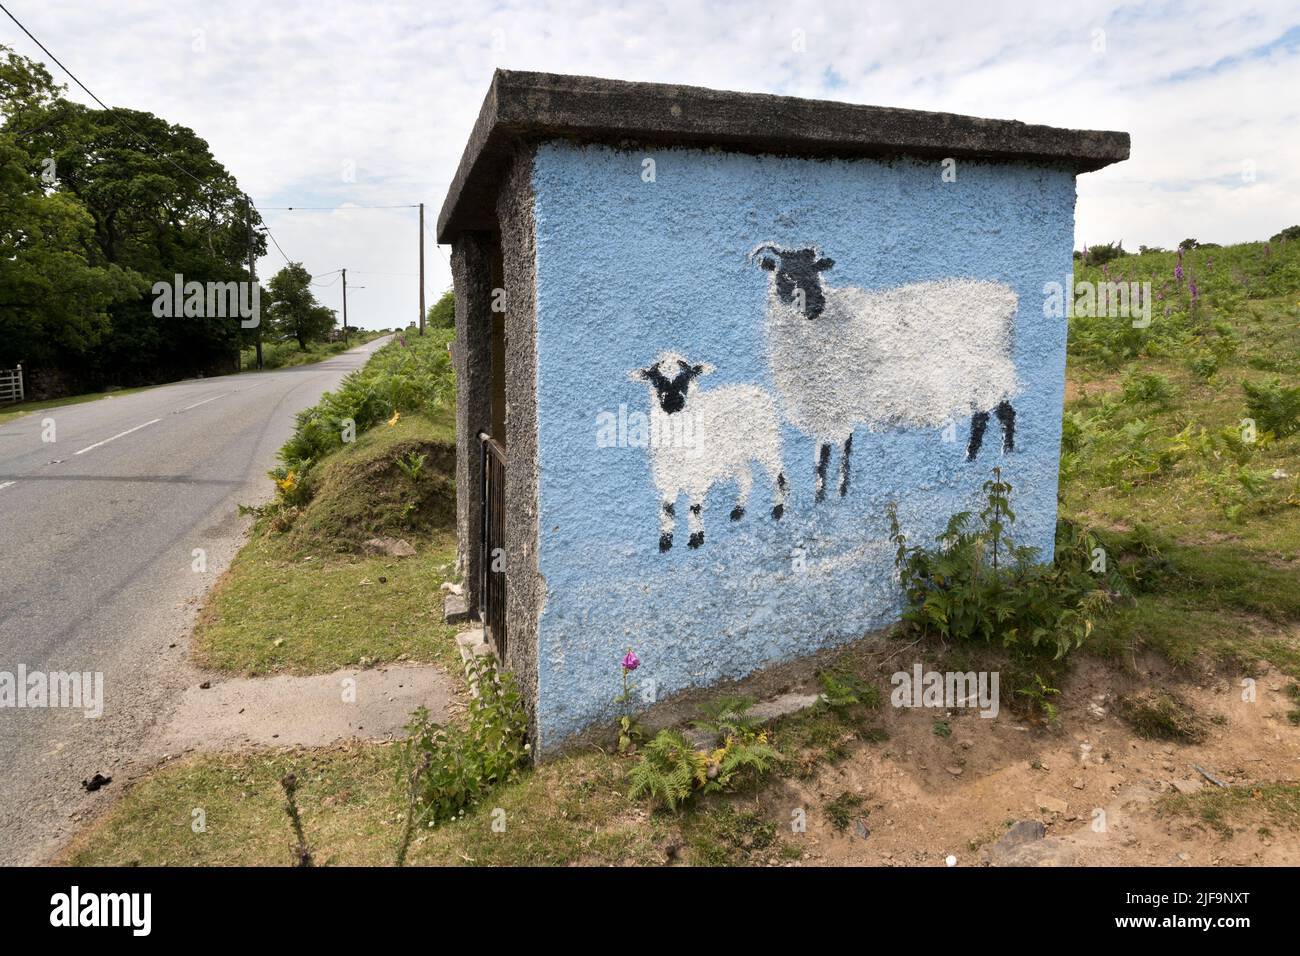 Refugio de autobuses pintado con ovejas, entre Cadover Bridge y Wotter, Dartmoor National Park, Devon, Reino Unido. El refugio tiene una puerta para evitar la entrada de ovejas. Foto de stock